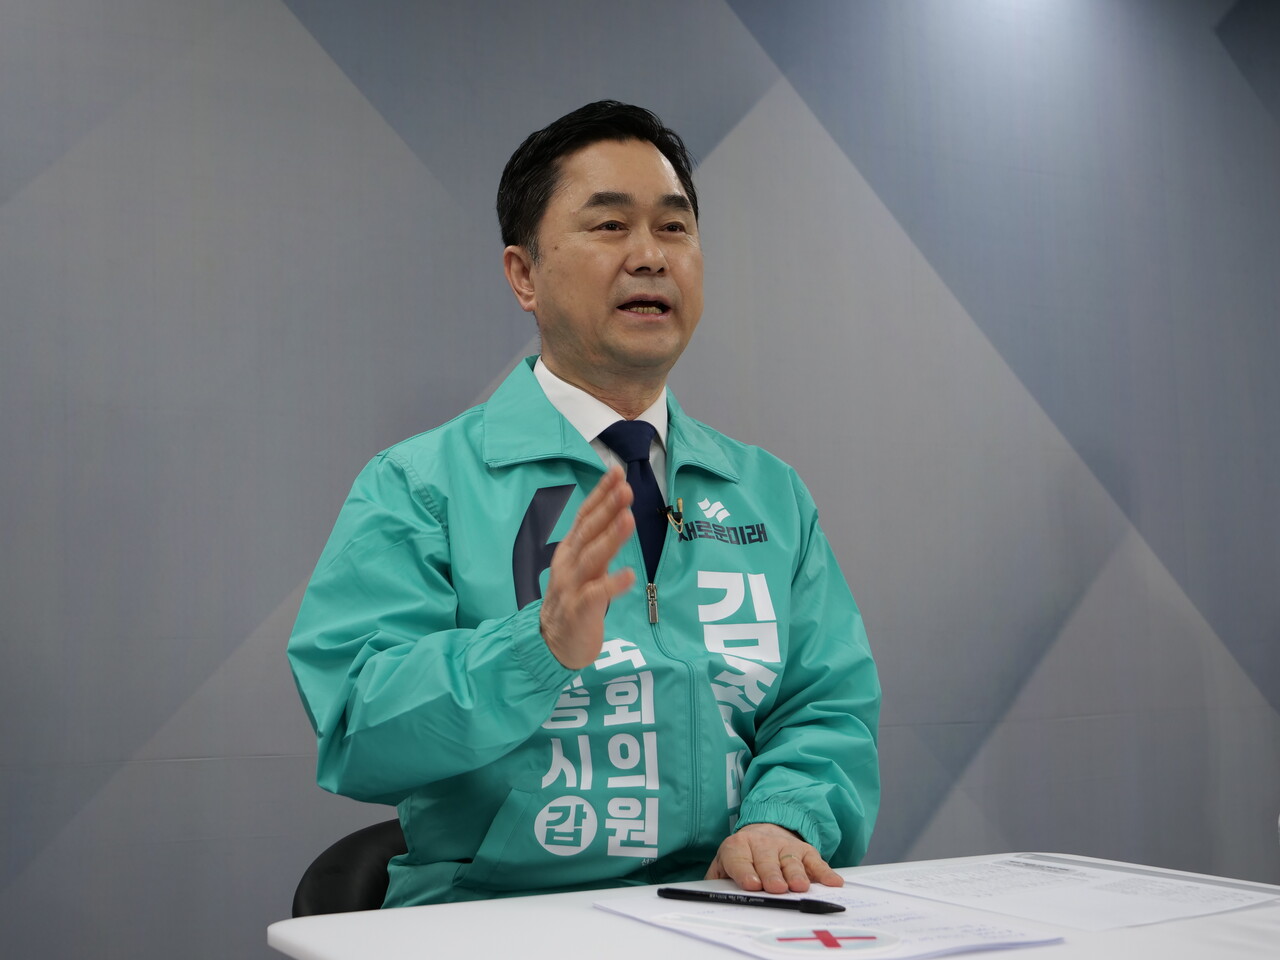 김종민 새로운미래 세종갑 후보. 한지혜 기자.